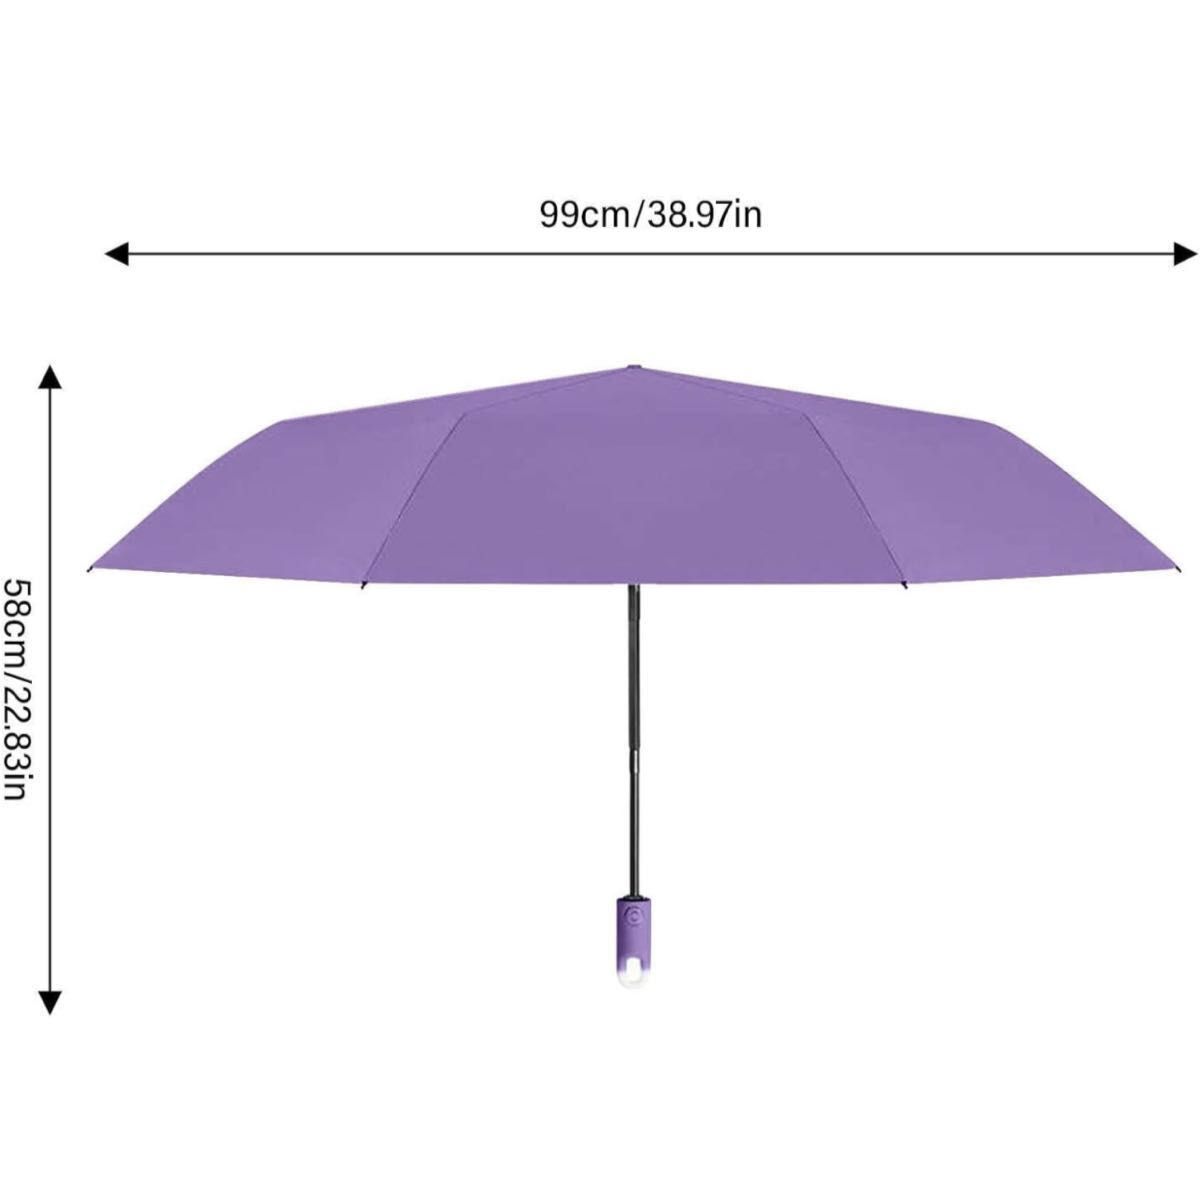 ウォーキング用日傘、防水自動日傘、紫外線遮断傘、クロスボディバッグ用ポータブル傘、高密度生地傘折りたたみバックパック車用財布傘